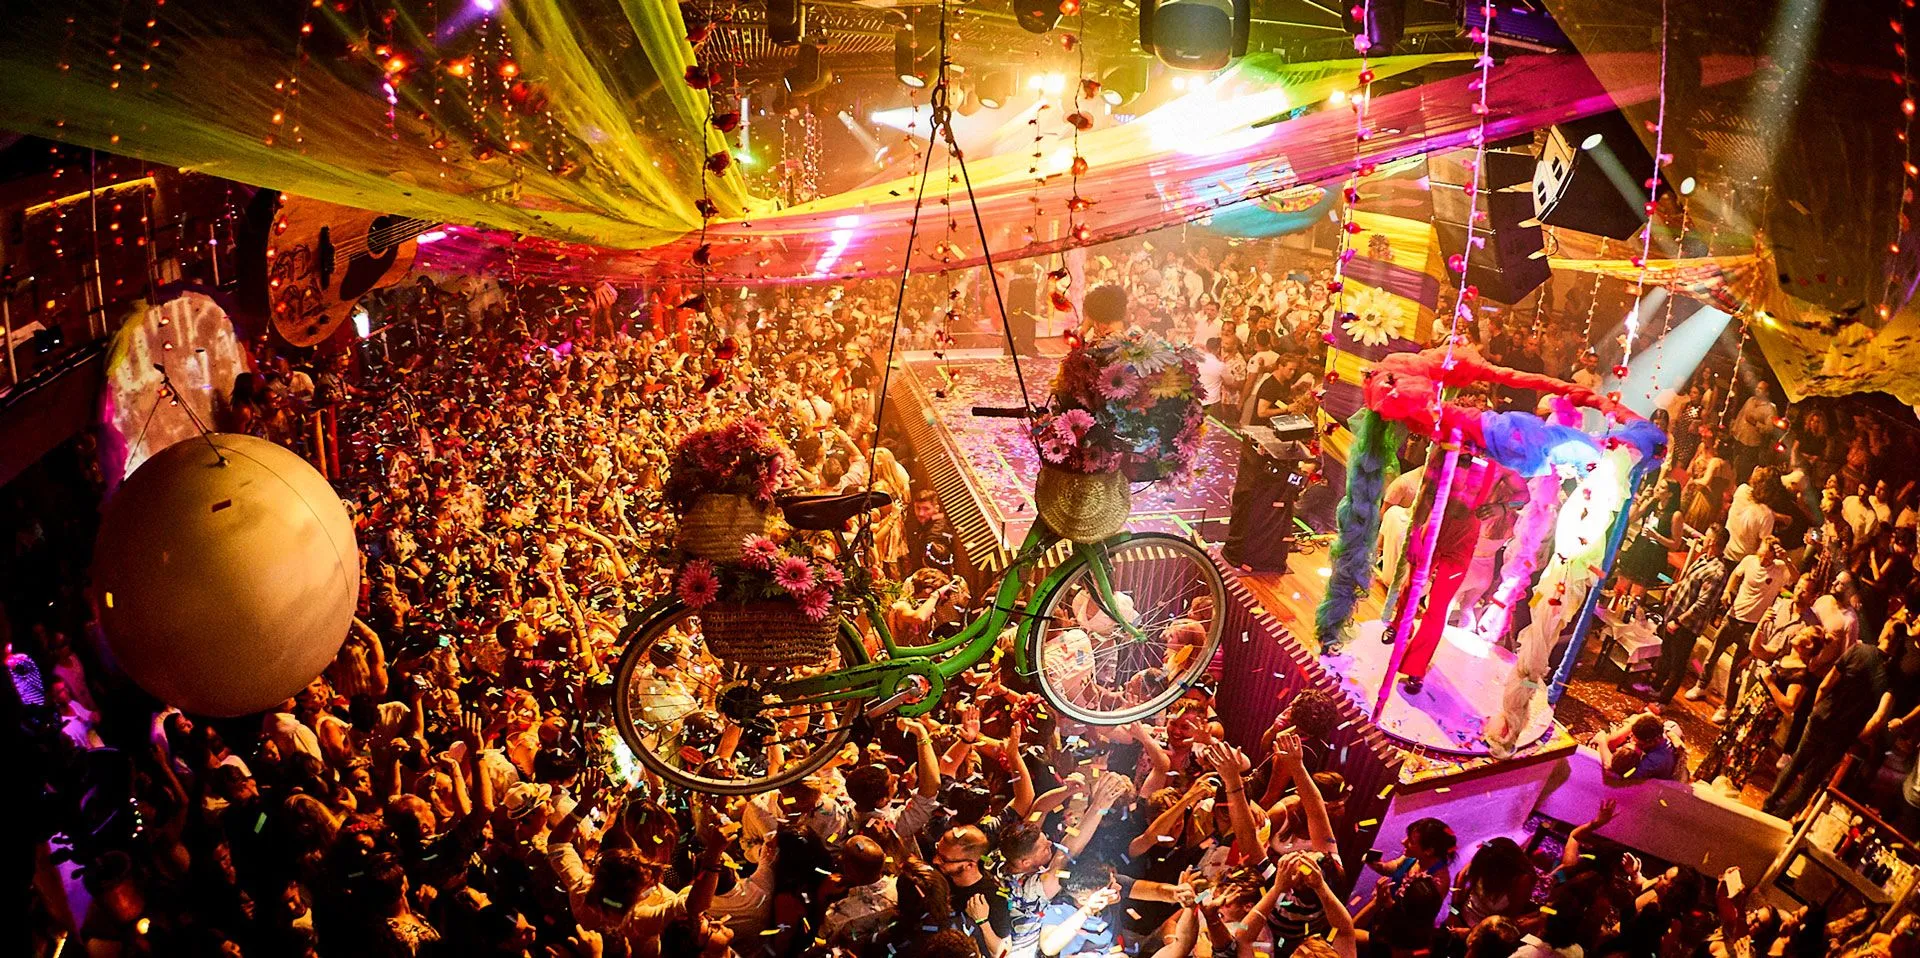 Pacha Nightclub in Spain, Europe | Nightclubs - Rated 3.4